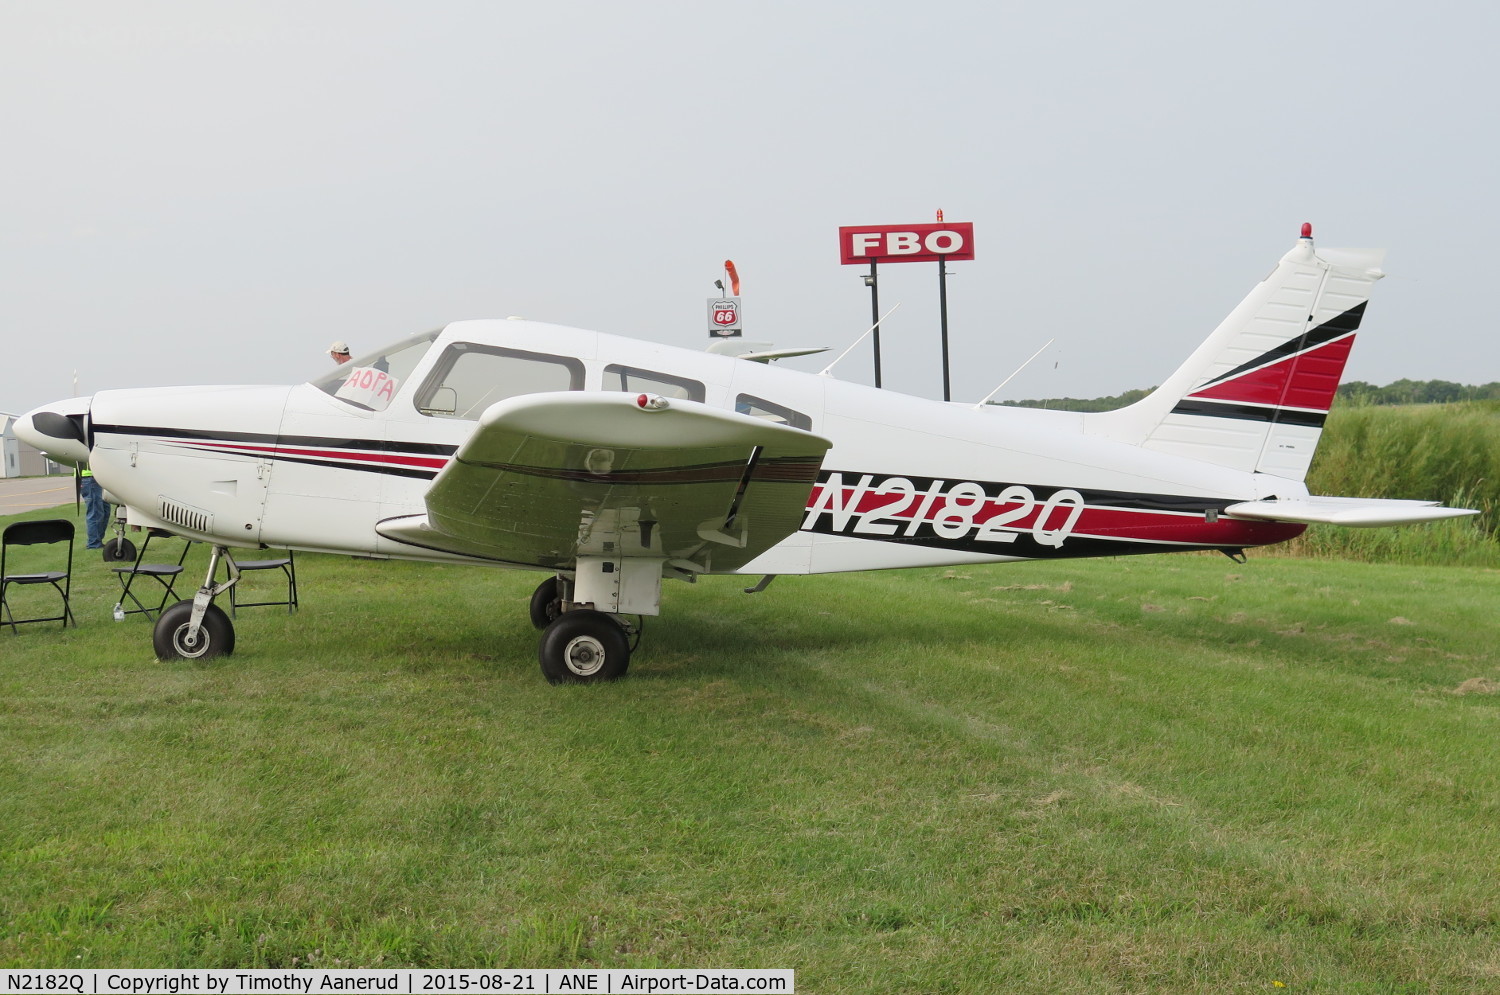 N2182Q, 1979 Piper PA-28-181 Archer C/N 28-7990297, 1979 Piper PA-28-181, c/n: 28-7990297
, 2015 AOPA FLY-IN Minneapolis, MN